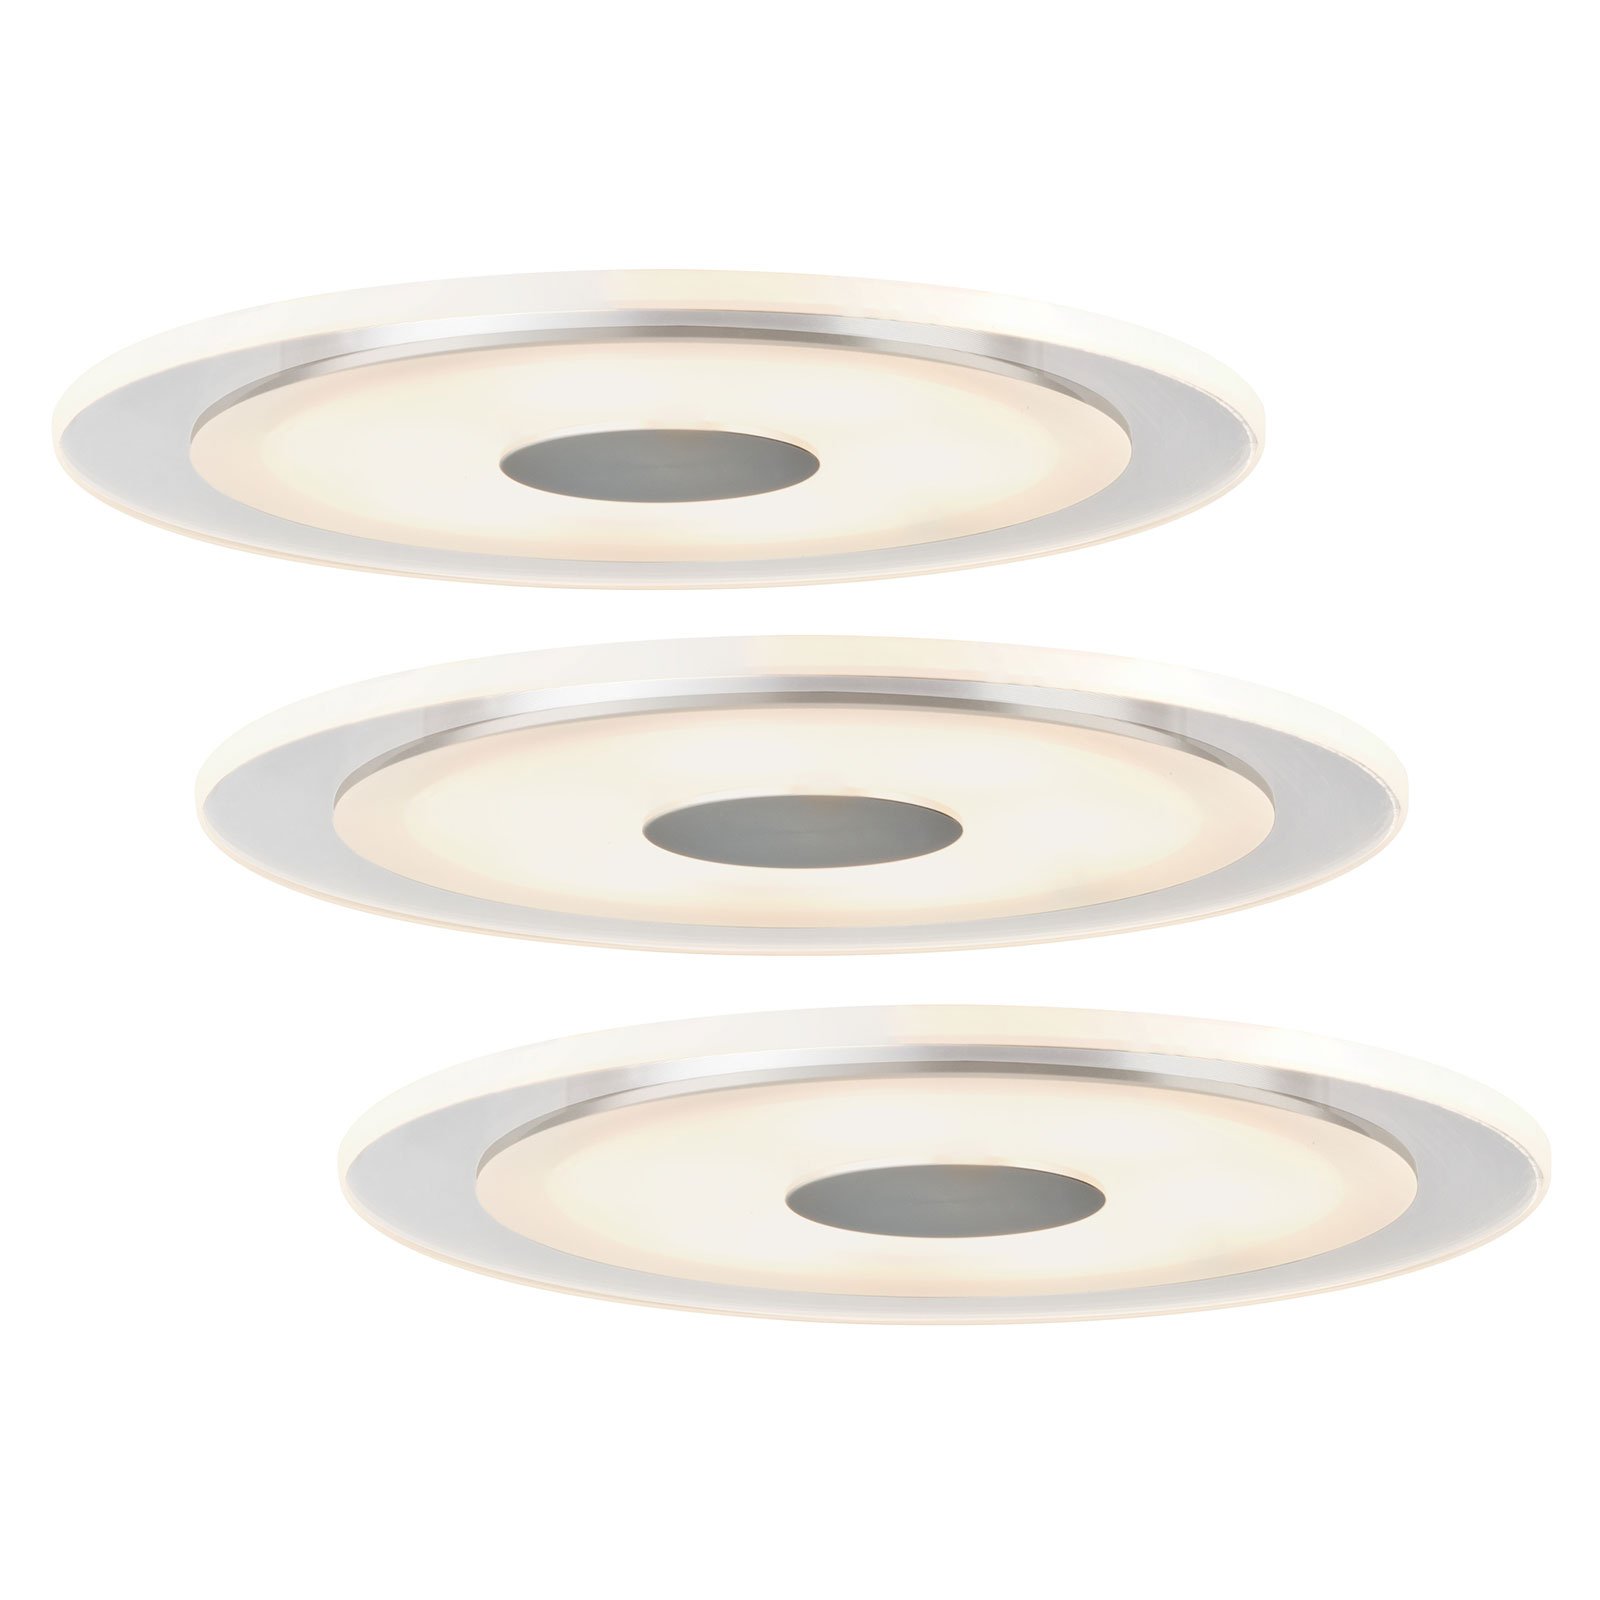 Paulmann Premium Line Whirl LED ugradna svjetiljka, set od 3 kom